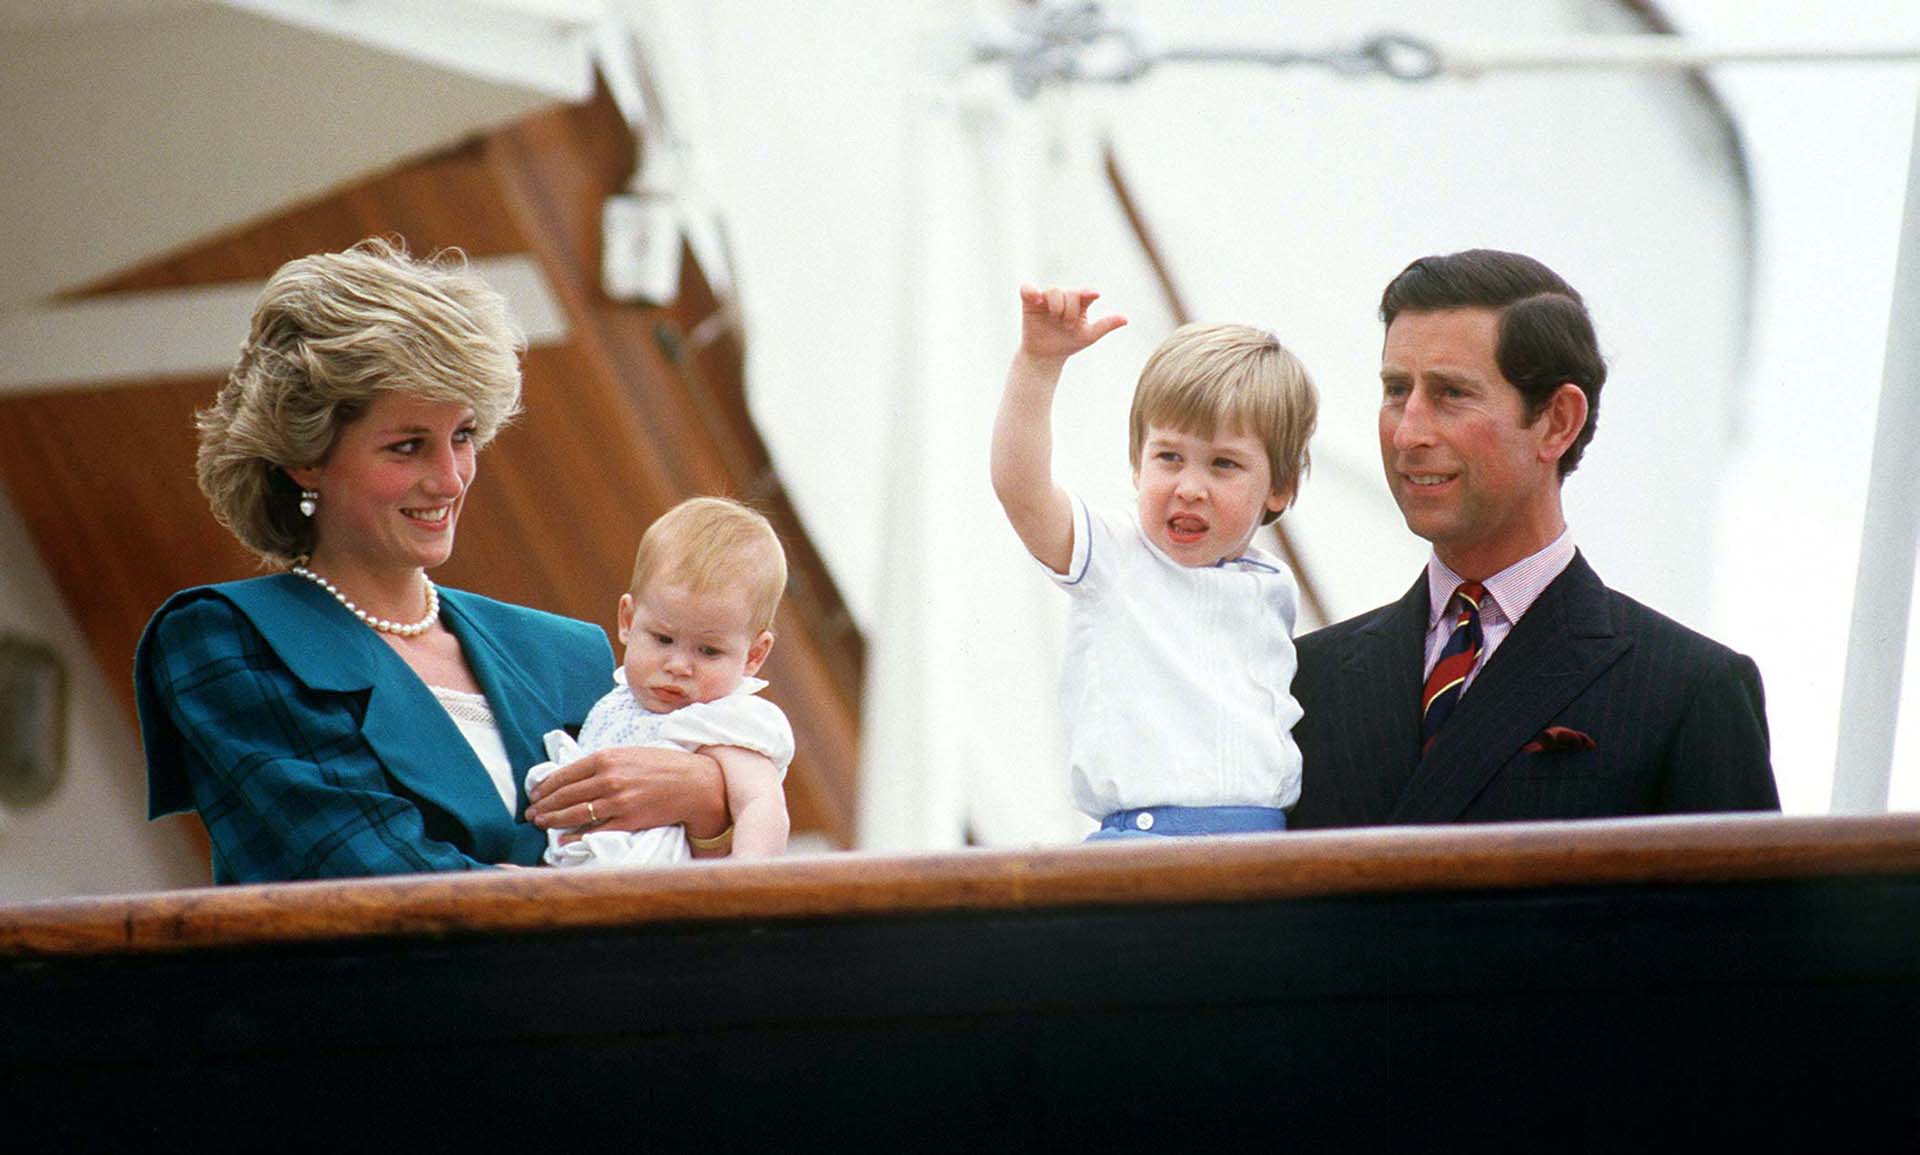 La princesa Diana con el príncipe Harry en brazos, el repuesto (eso significa "spare") y el actual rey Carlos III con el príncipe William. (Mauro Carraro/Shutterstock)